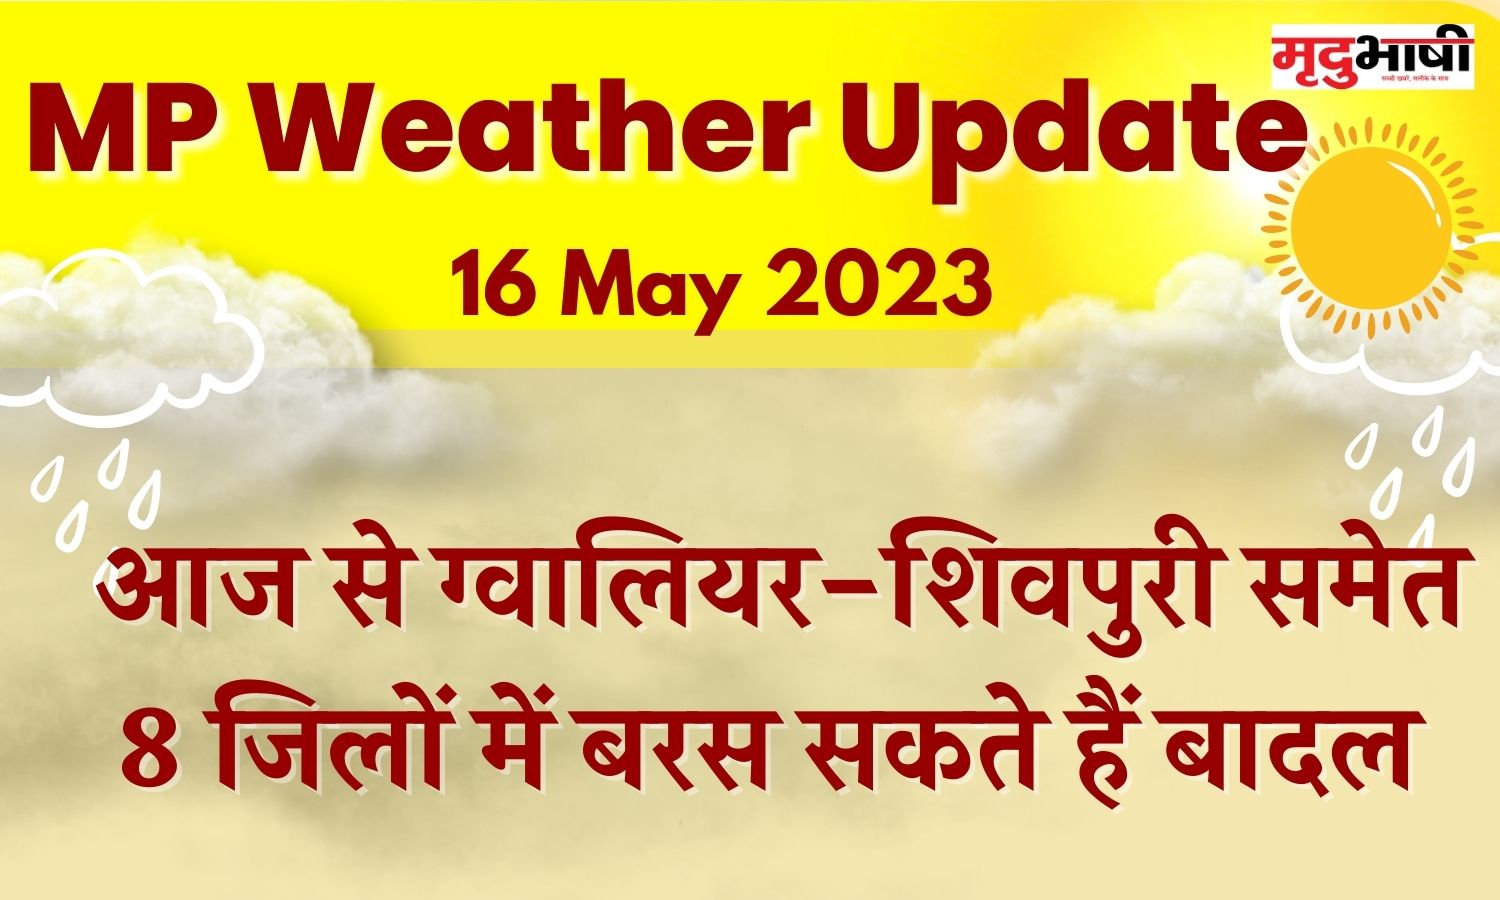 mp weather आज से ग्वालियर-शिवपुरी समेत 8 जिलों में बरस सकते हैं बादल